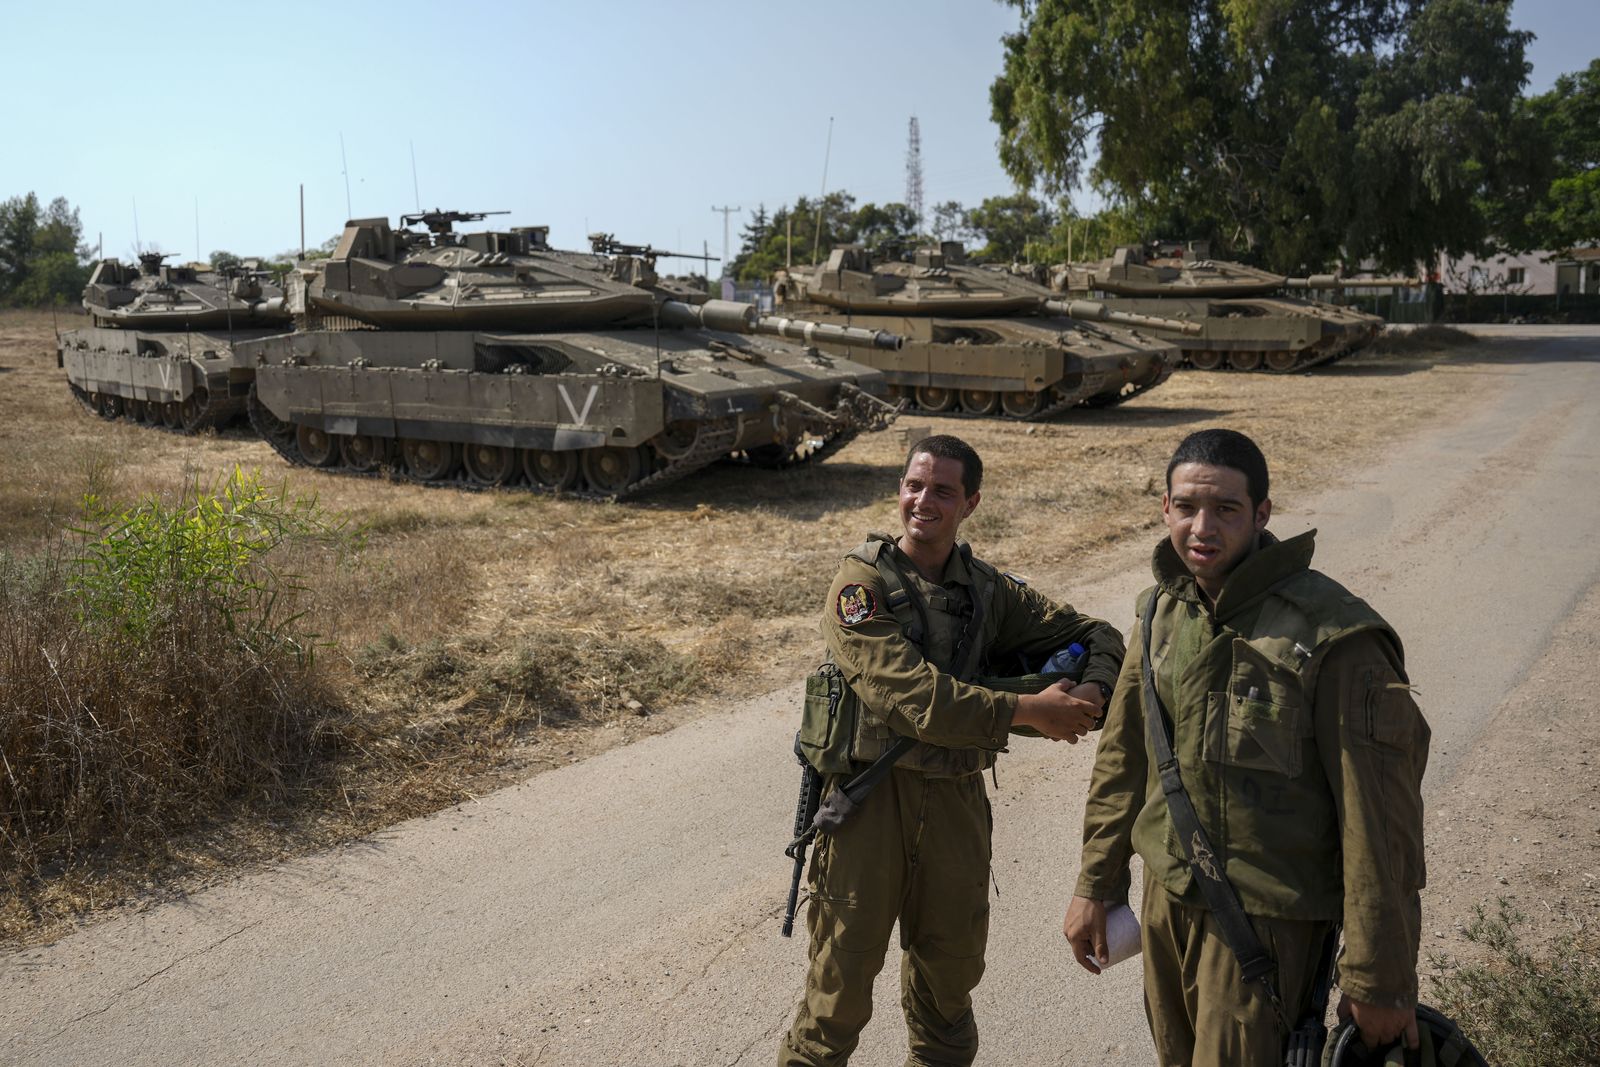 Новости израиля ньюс. Танки Палестины. Израильские танки. Израильские танки в Палестине. Меркава танк Палестина.